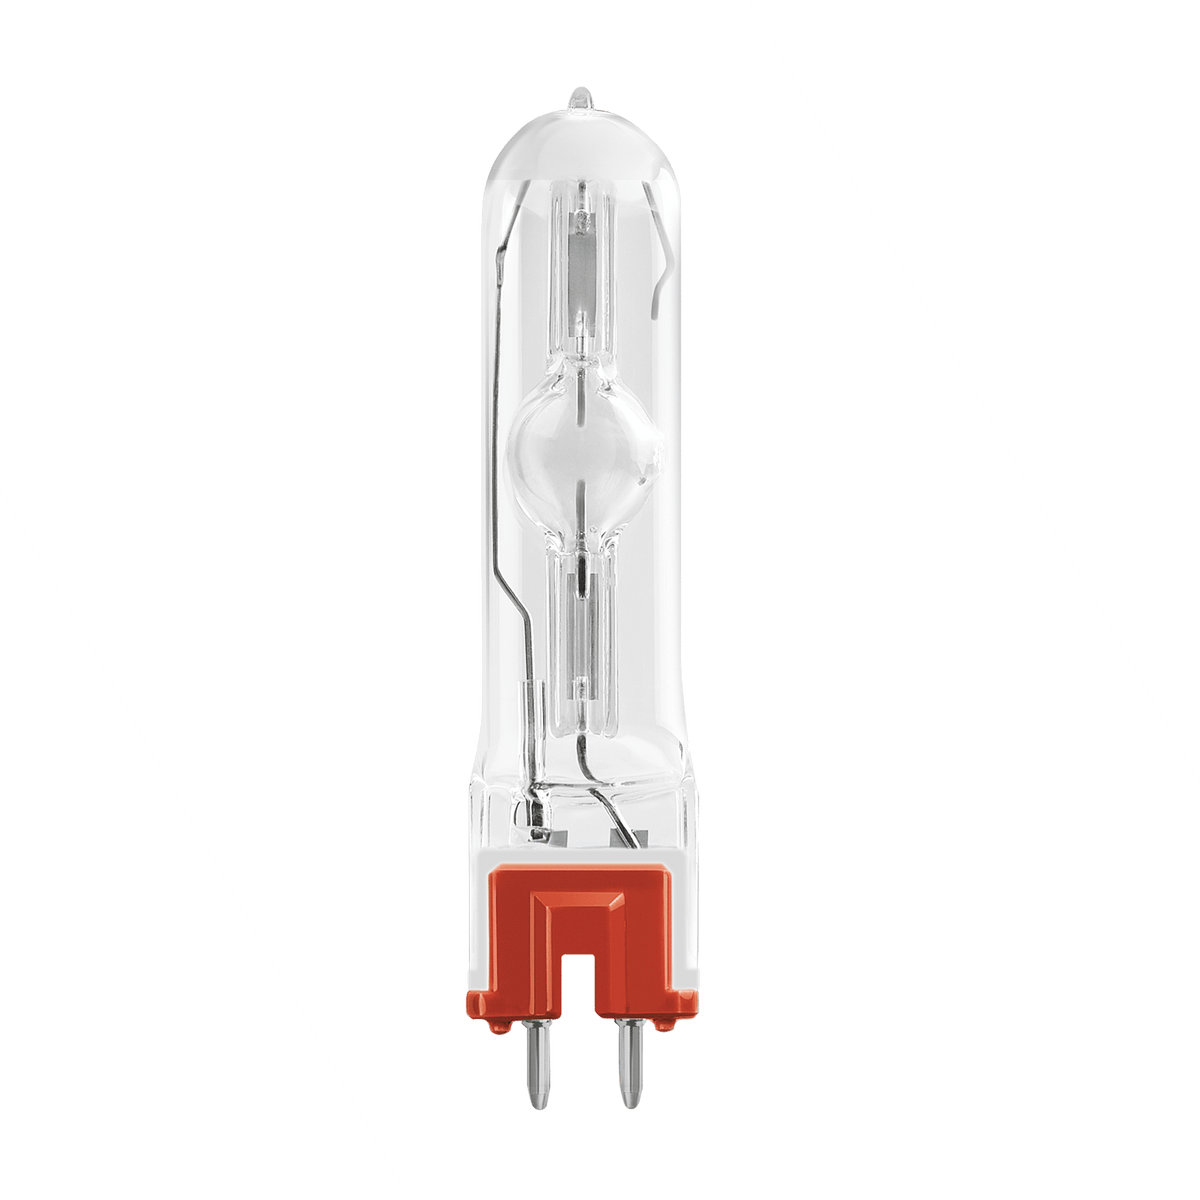 OSRAM HMI 400W/SE UVS GZZ9.5 Lamp